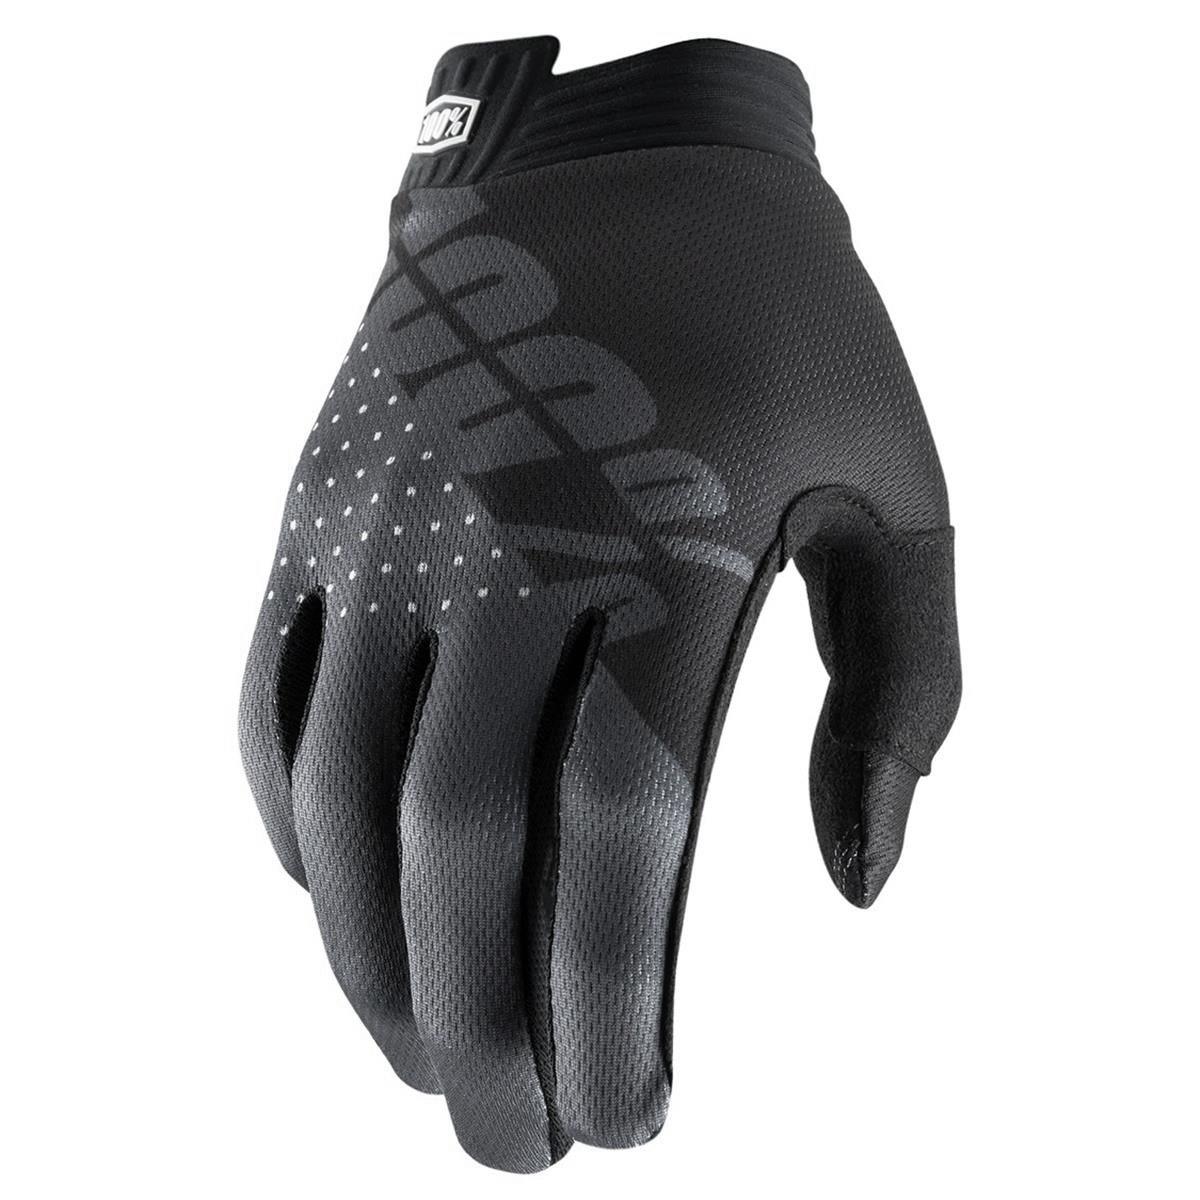 100% Bike-Handschuhe iTrack Schwarz/Charcoal